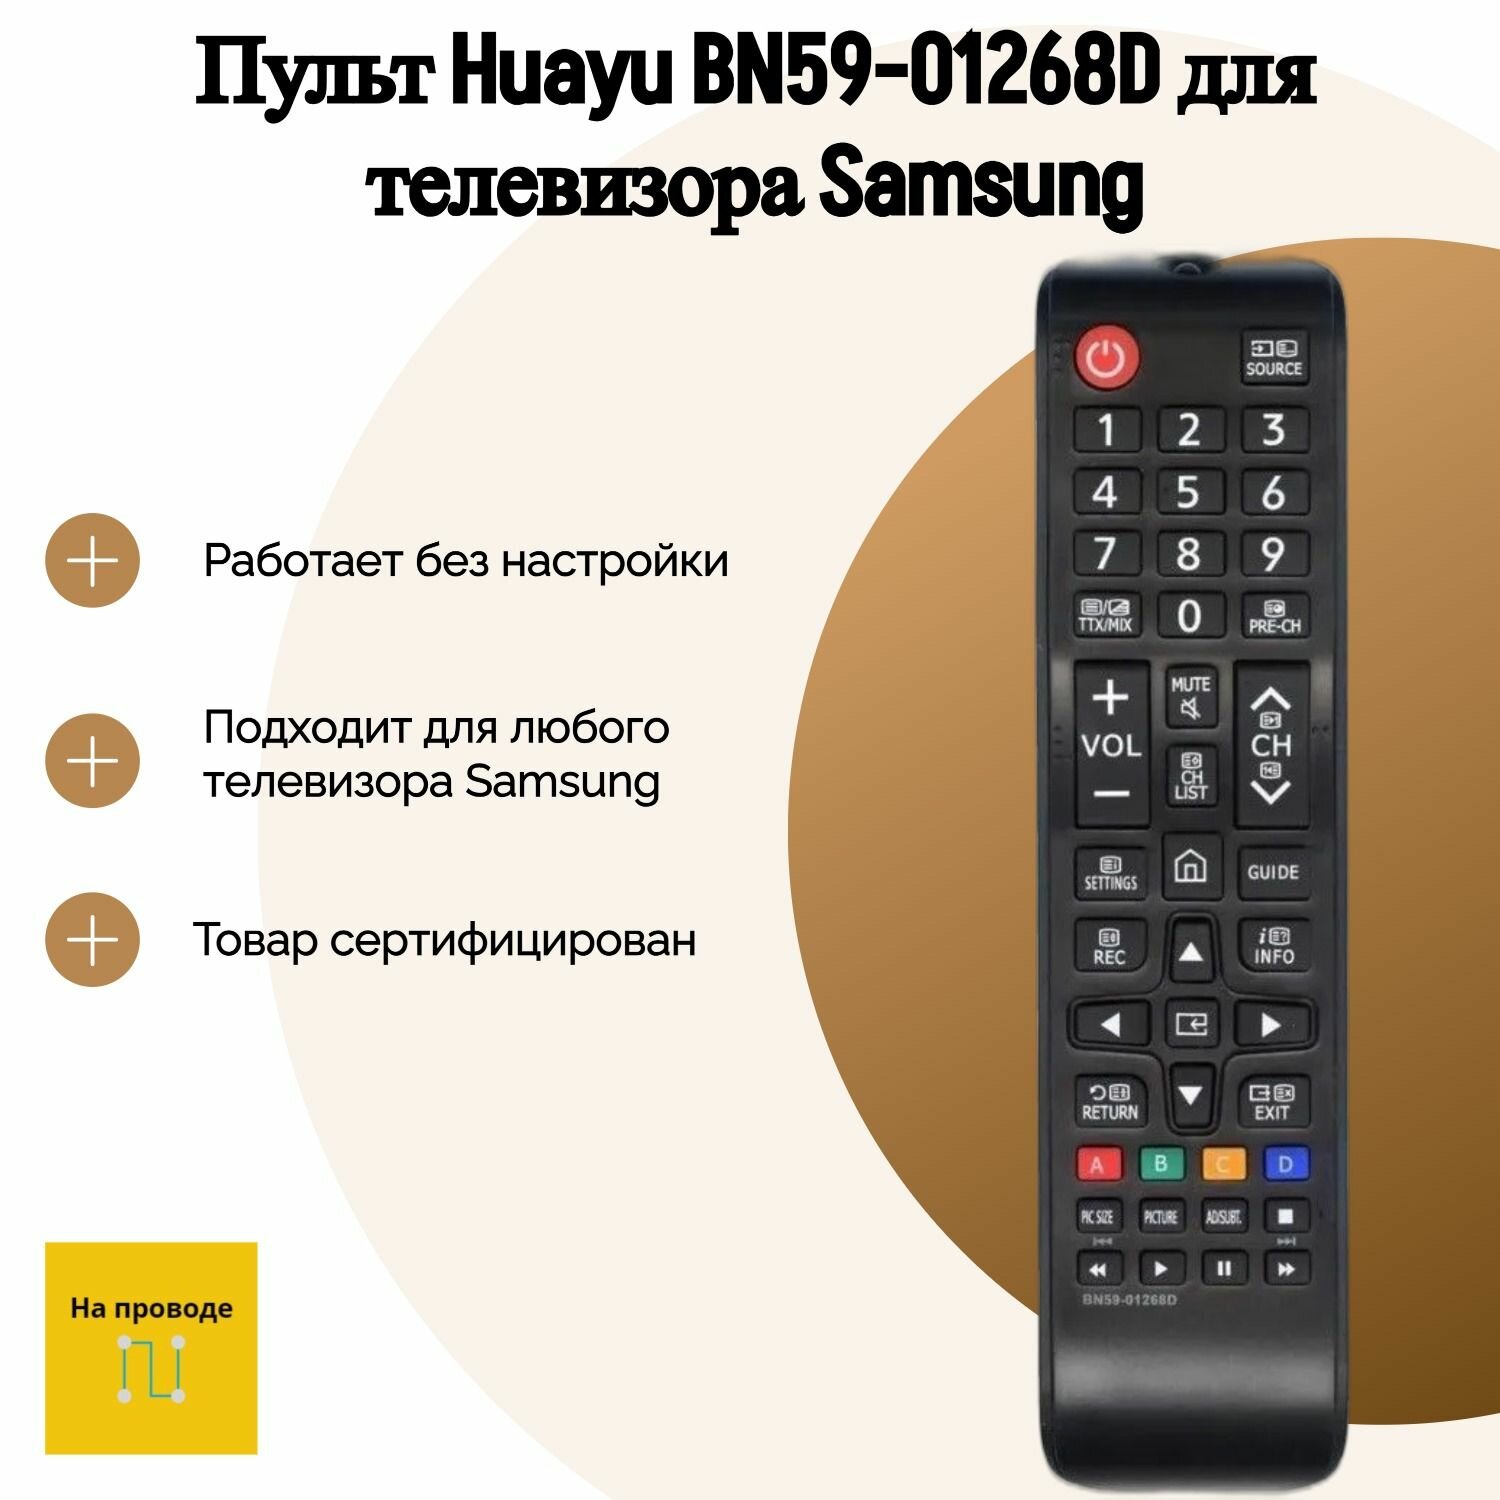 Пульт Huayu BN59-01268D для телевизора Samsung